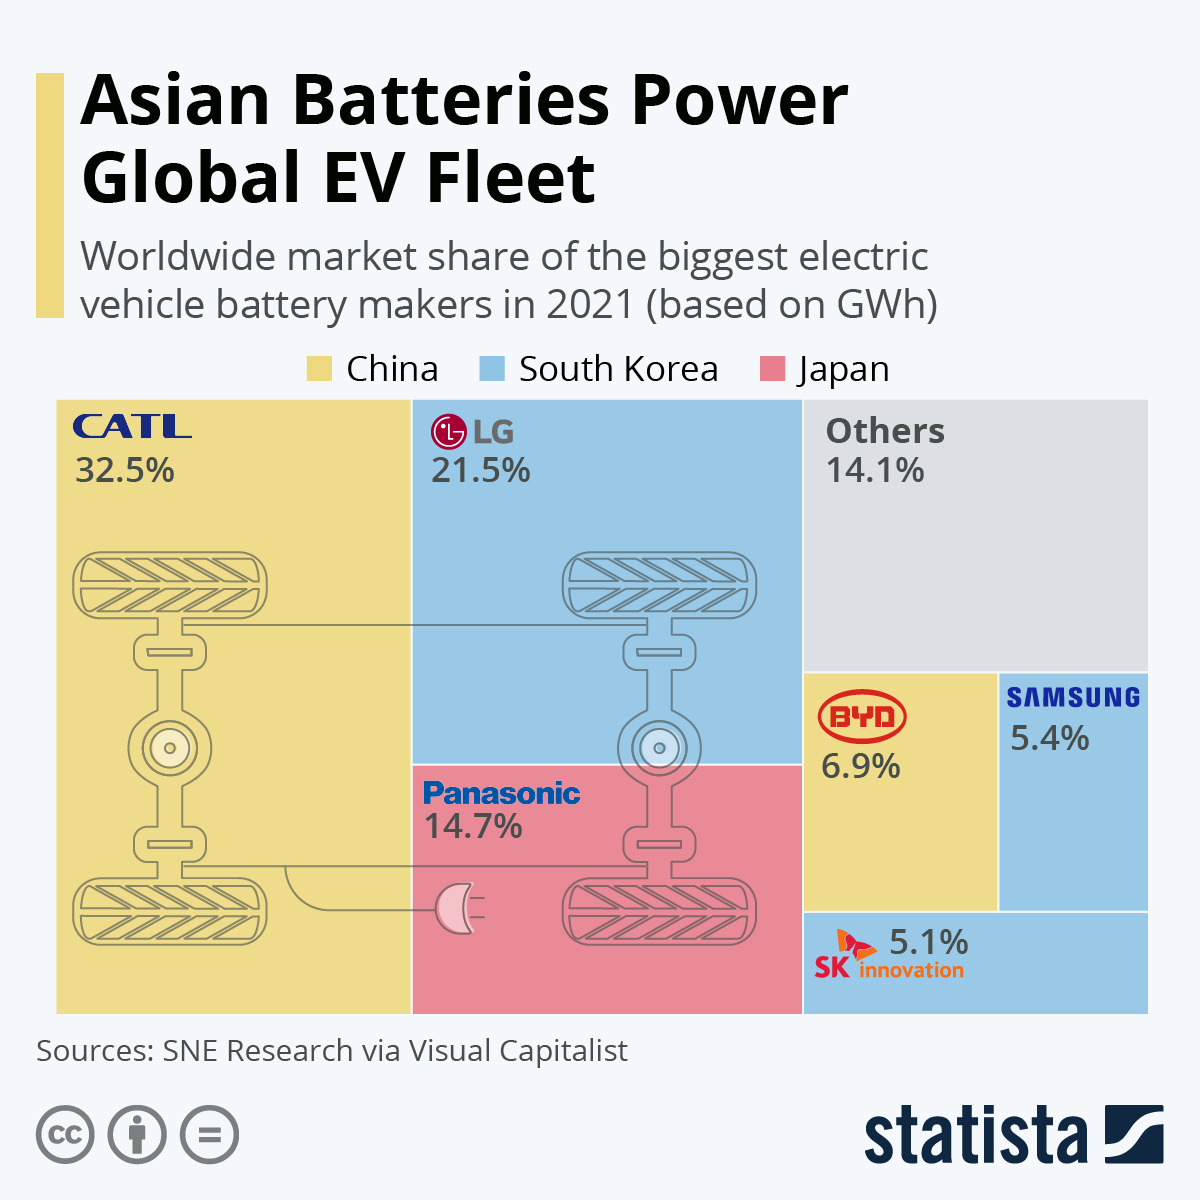 Asian Batteries Power Global EV Fleet